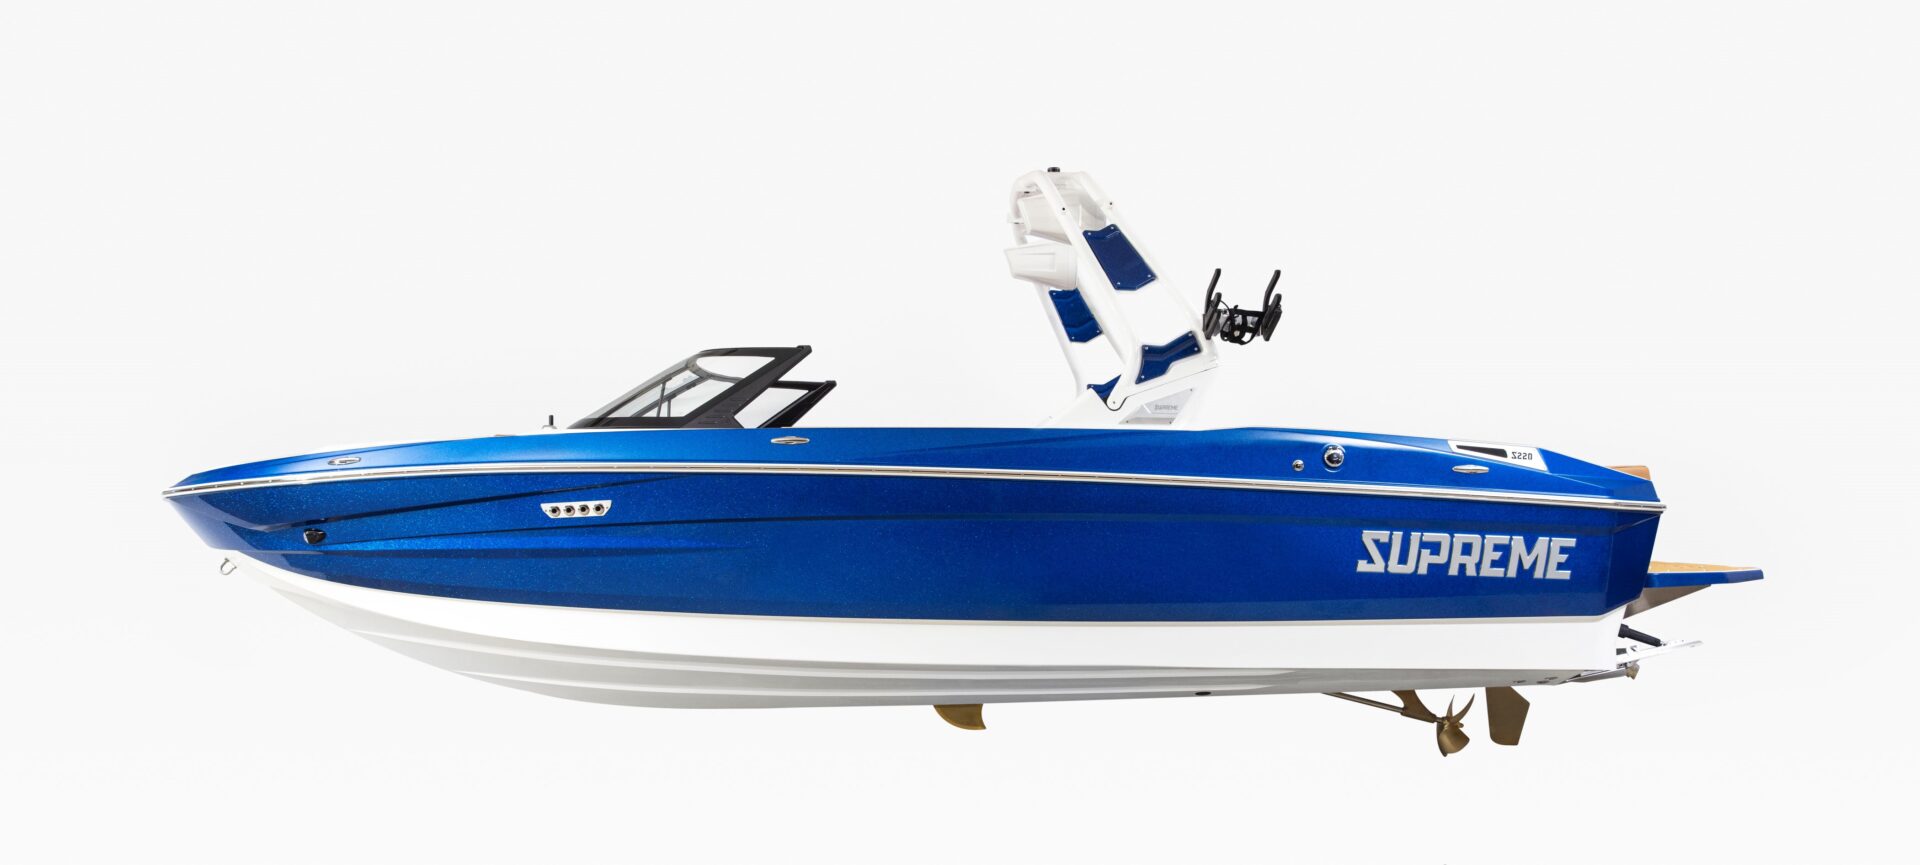 SUPREME S220 - Stream Yachts 